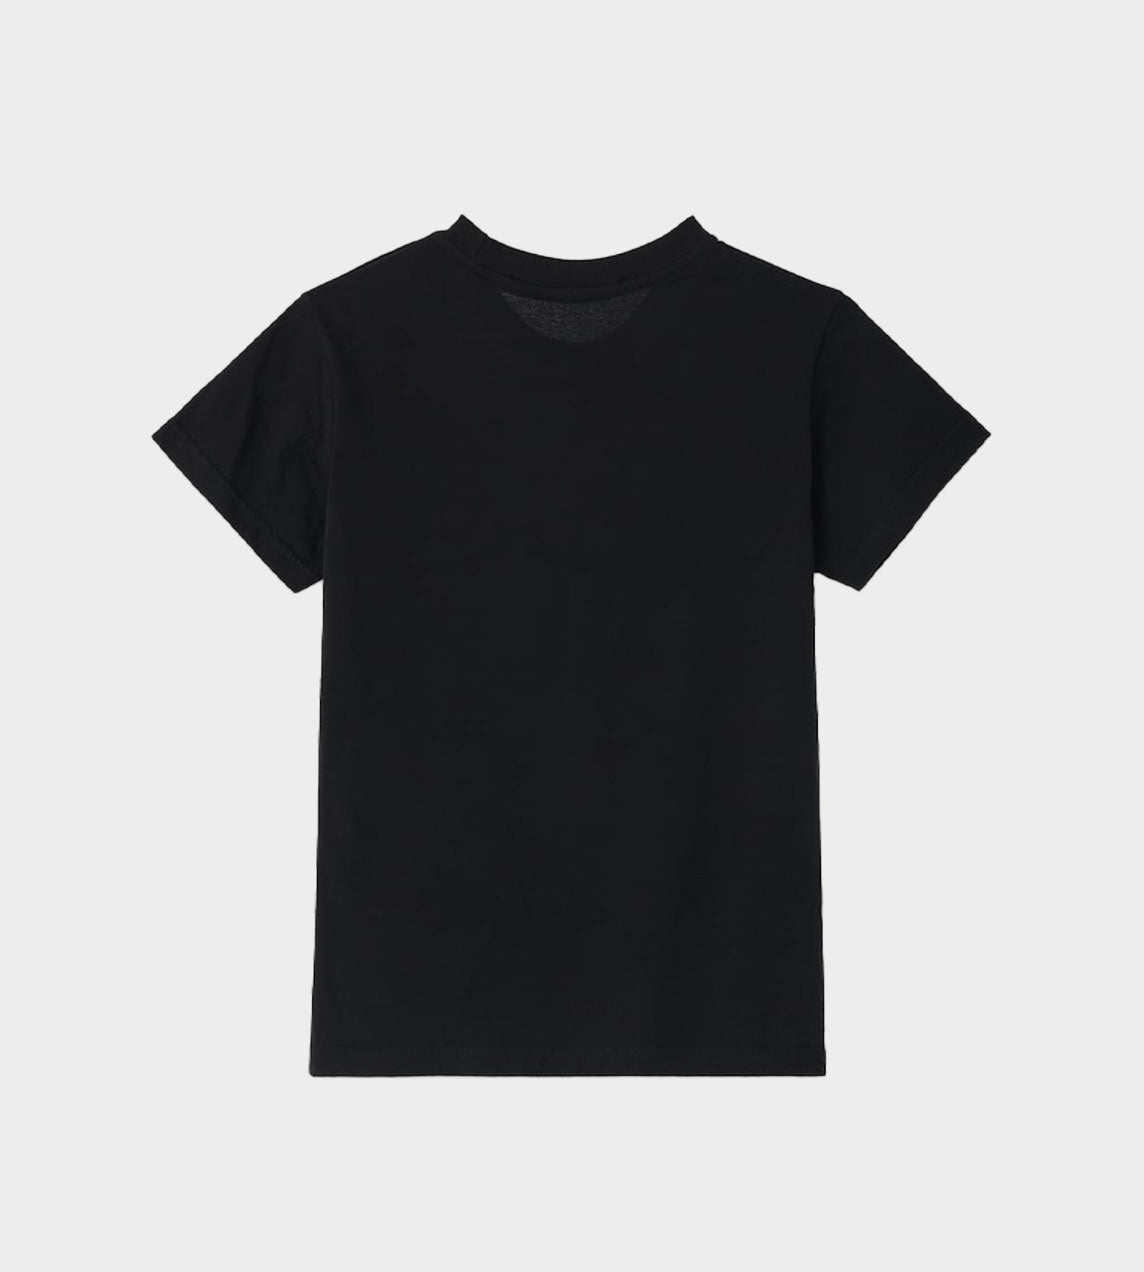 KimHeKim - One Pearl Piercing T-Shirt Black